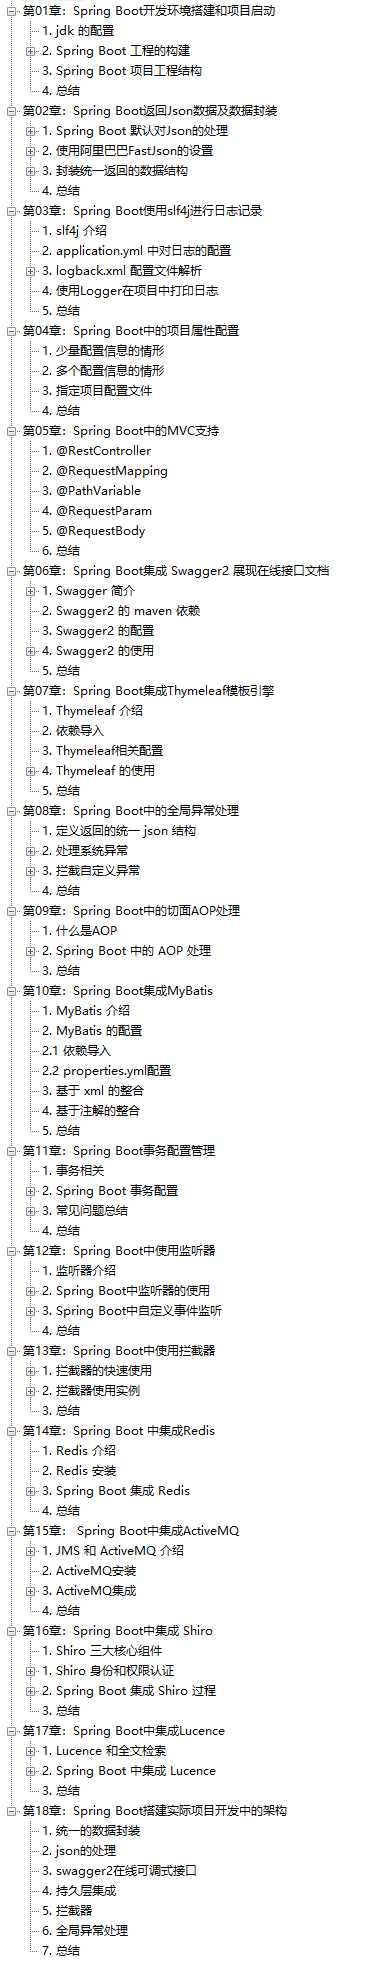 阿里内部最新教材：Spring+SpringBoot+SpringCloud全家桶第五版